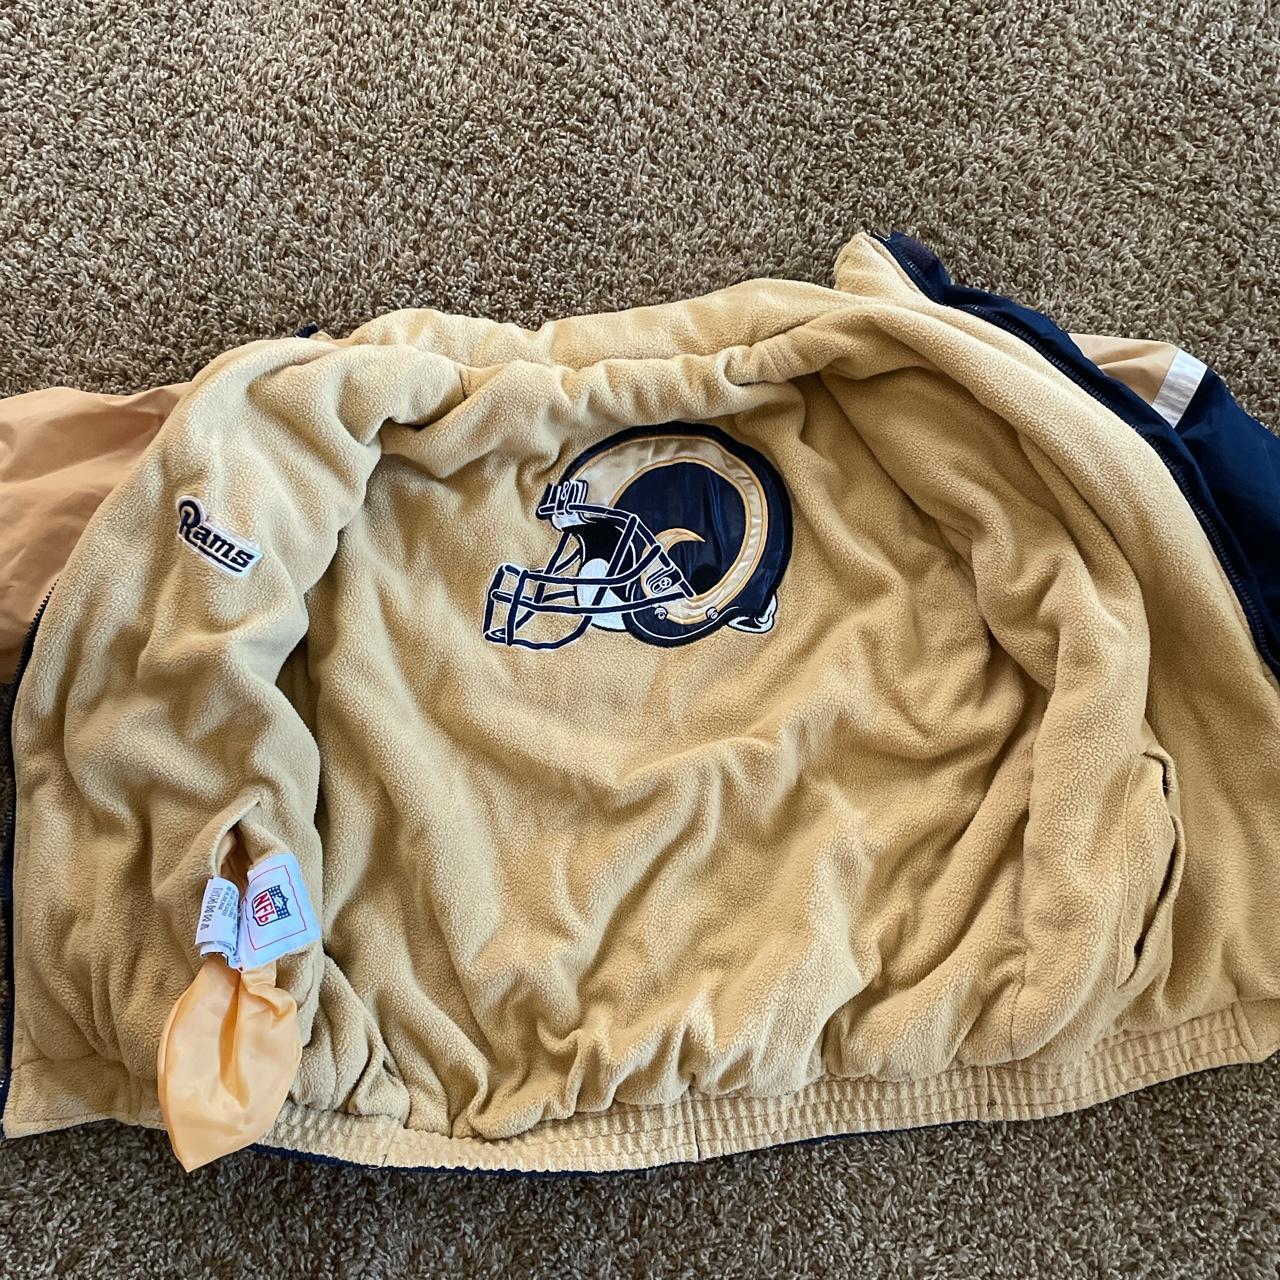 NFL St. Louis Rams bomber jacket! #nfl #bomber - Depop